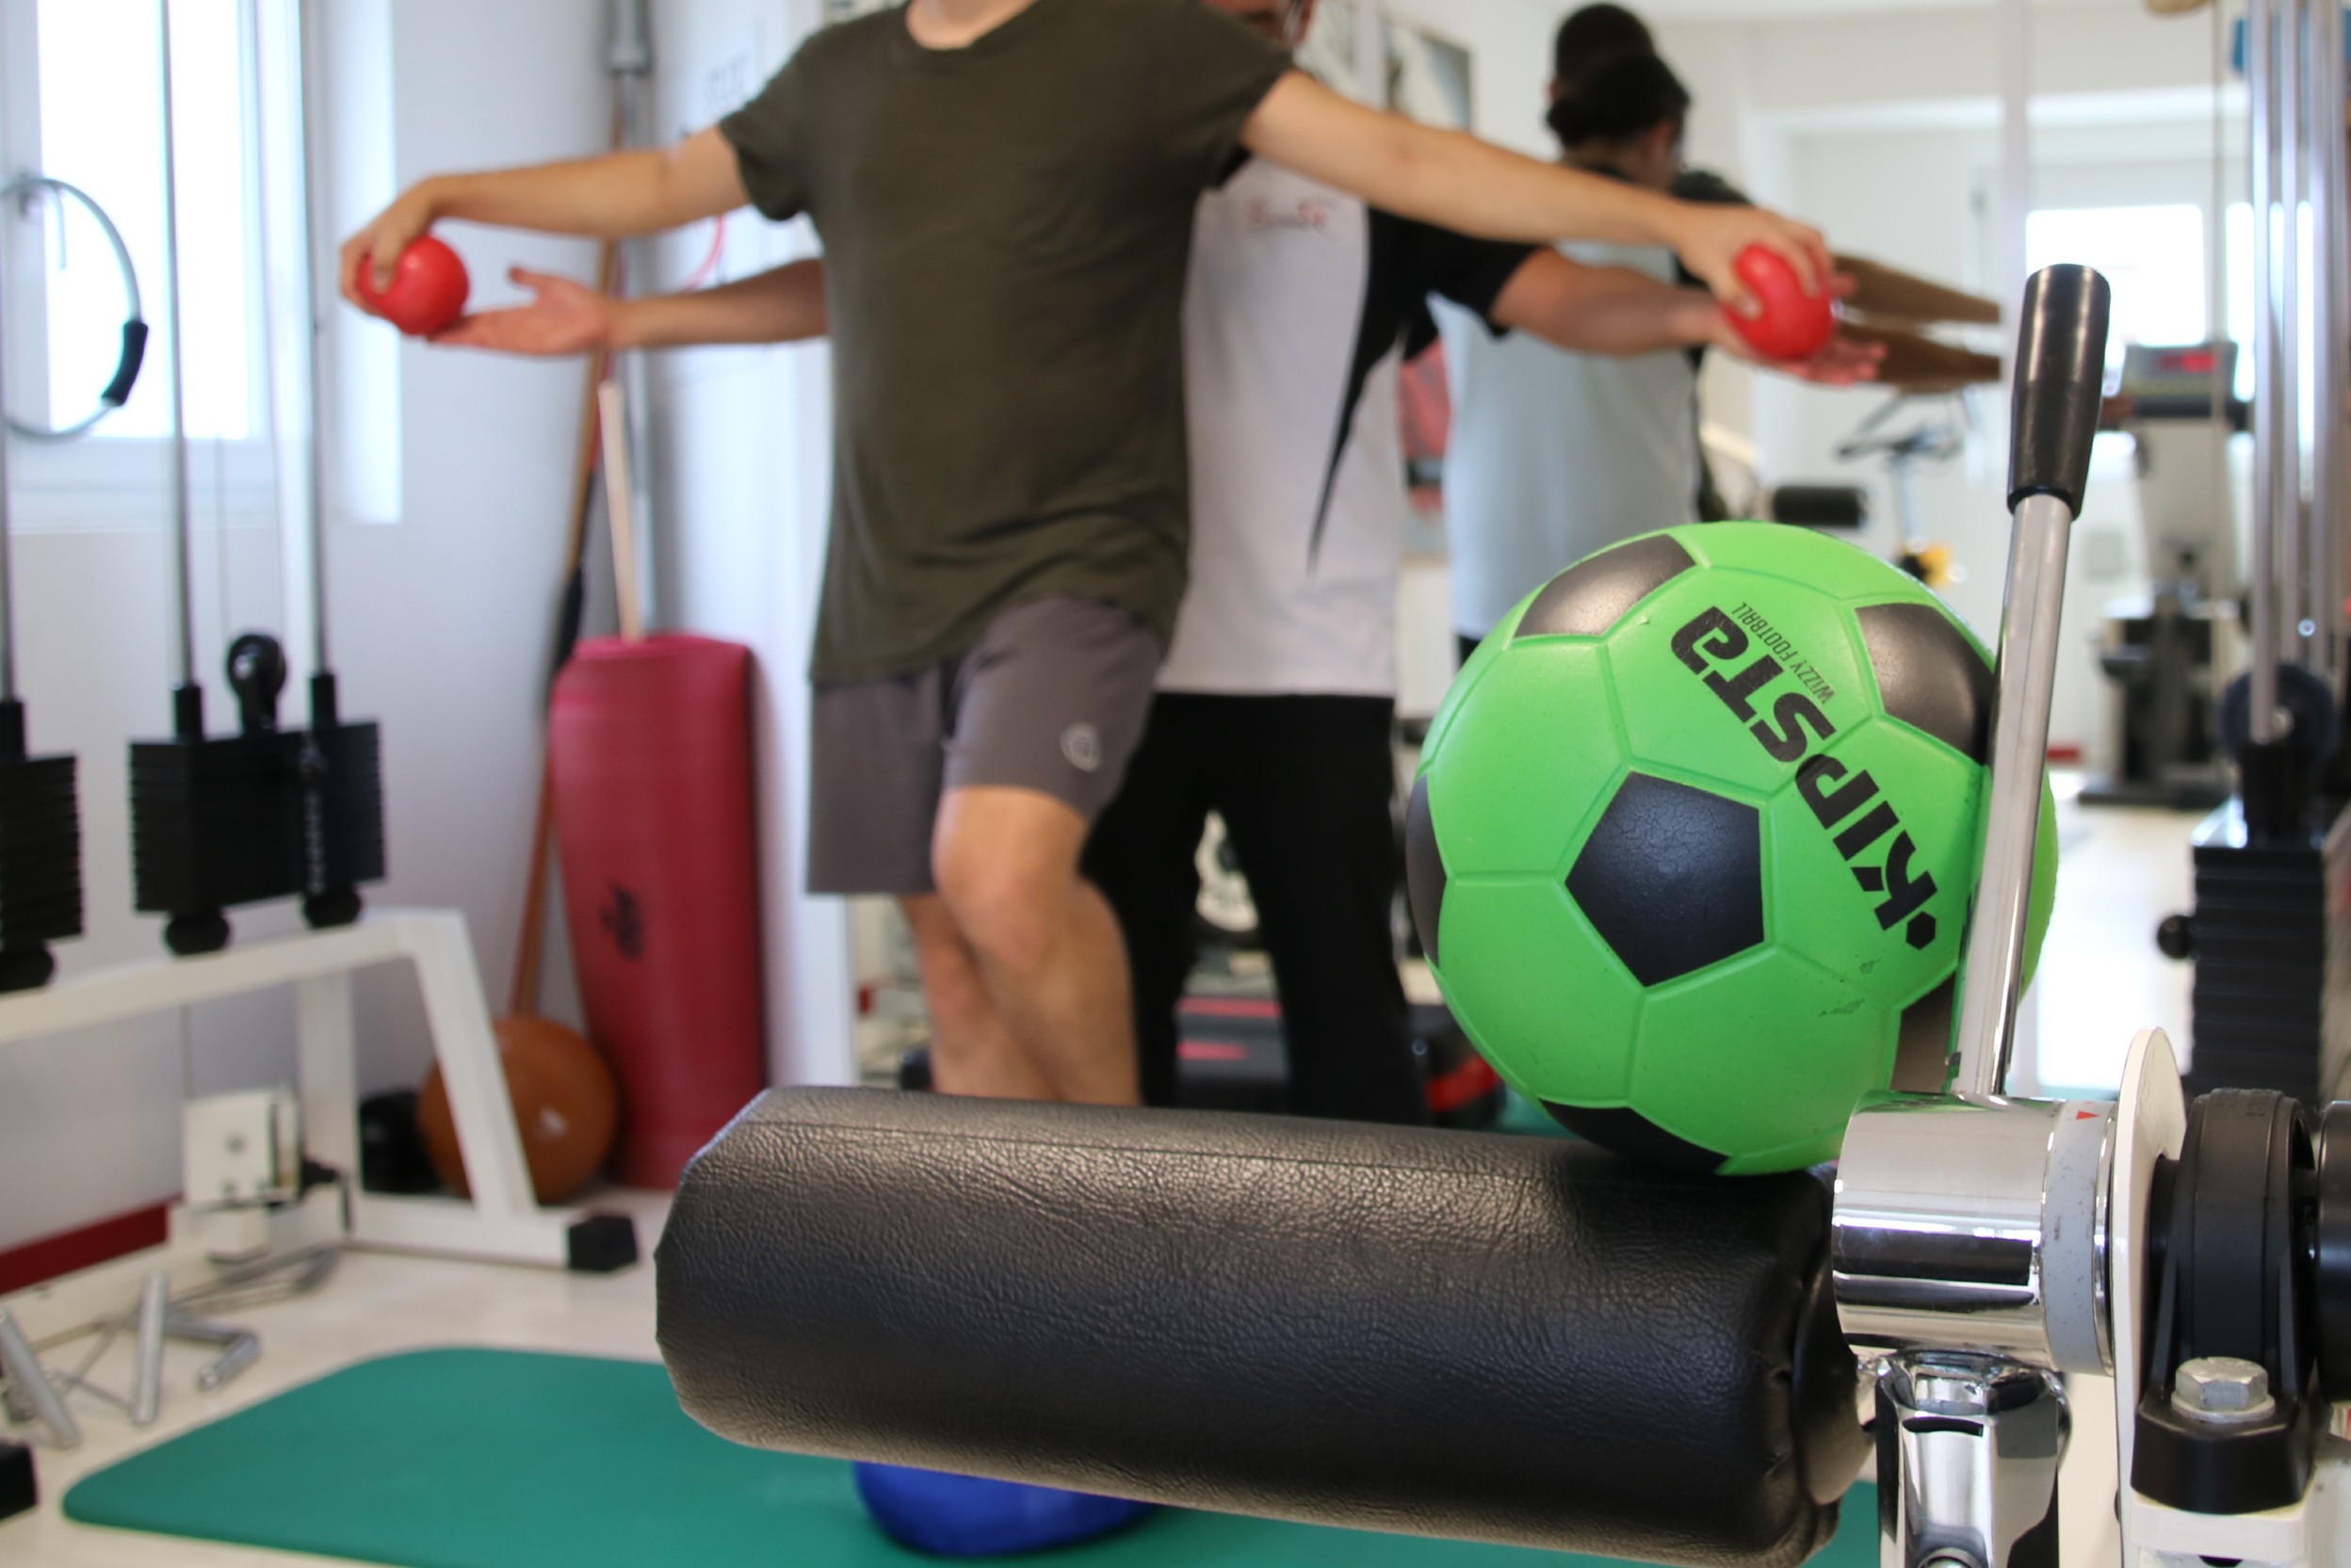 Seduta di Core Stability presso il centro fisioterapia Physio Sport Progress in Ticino